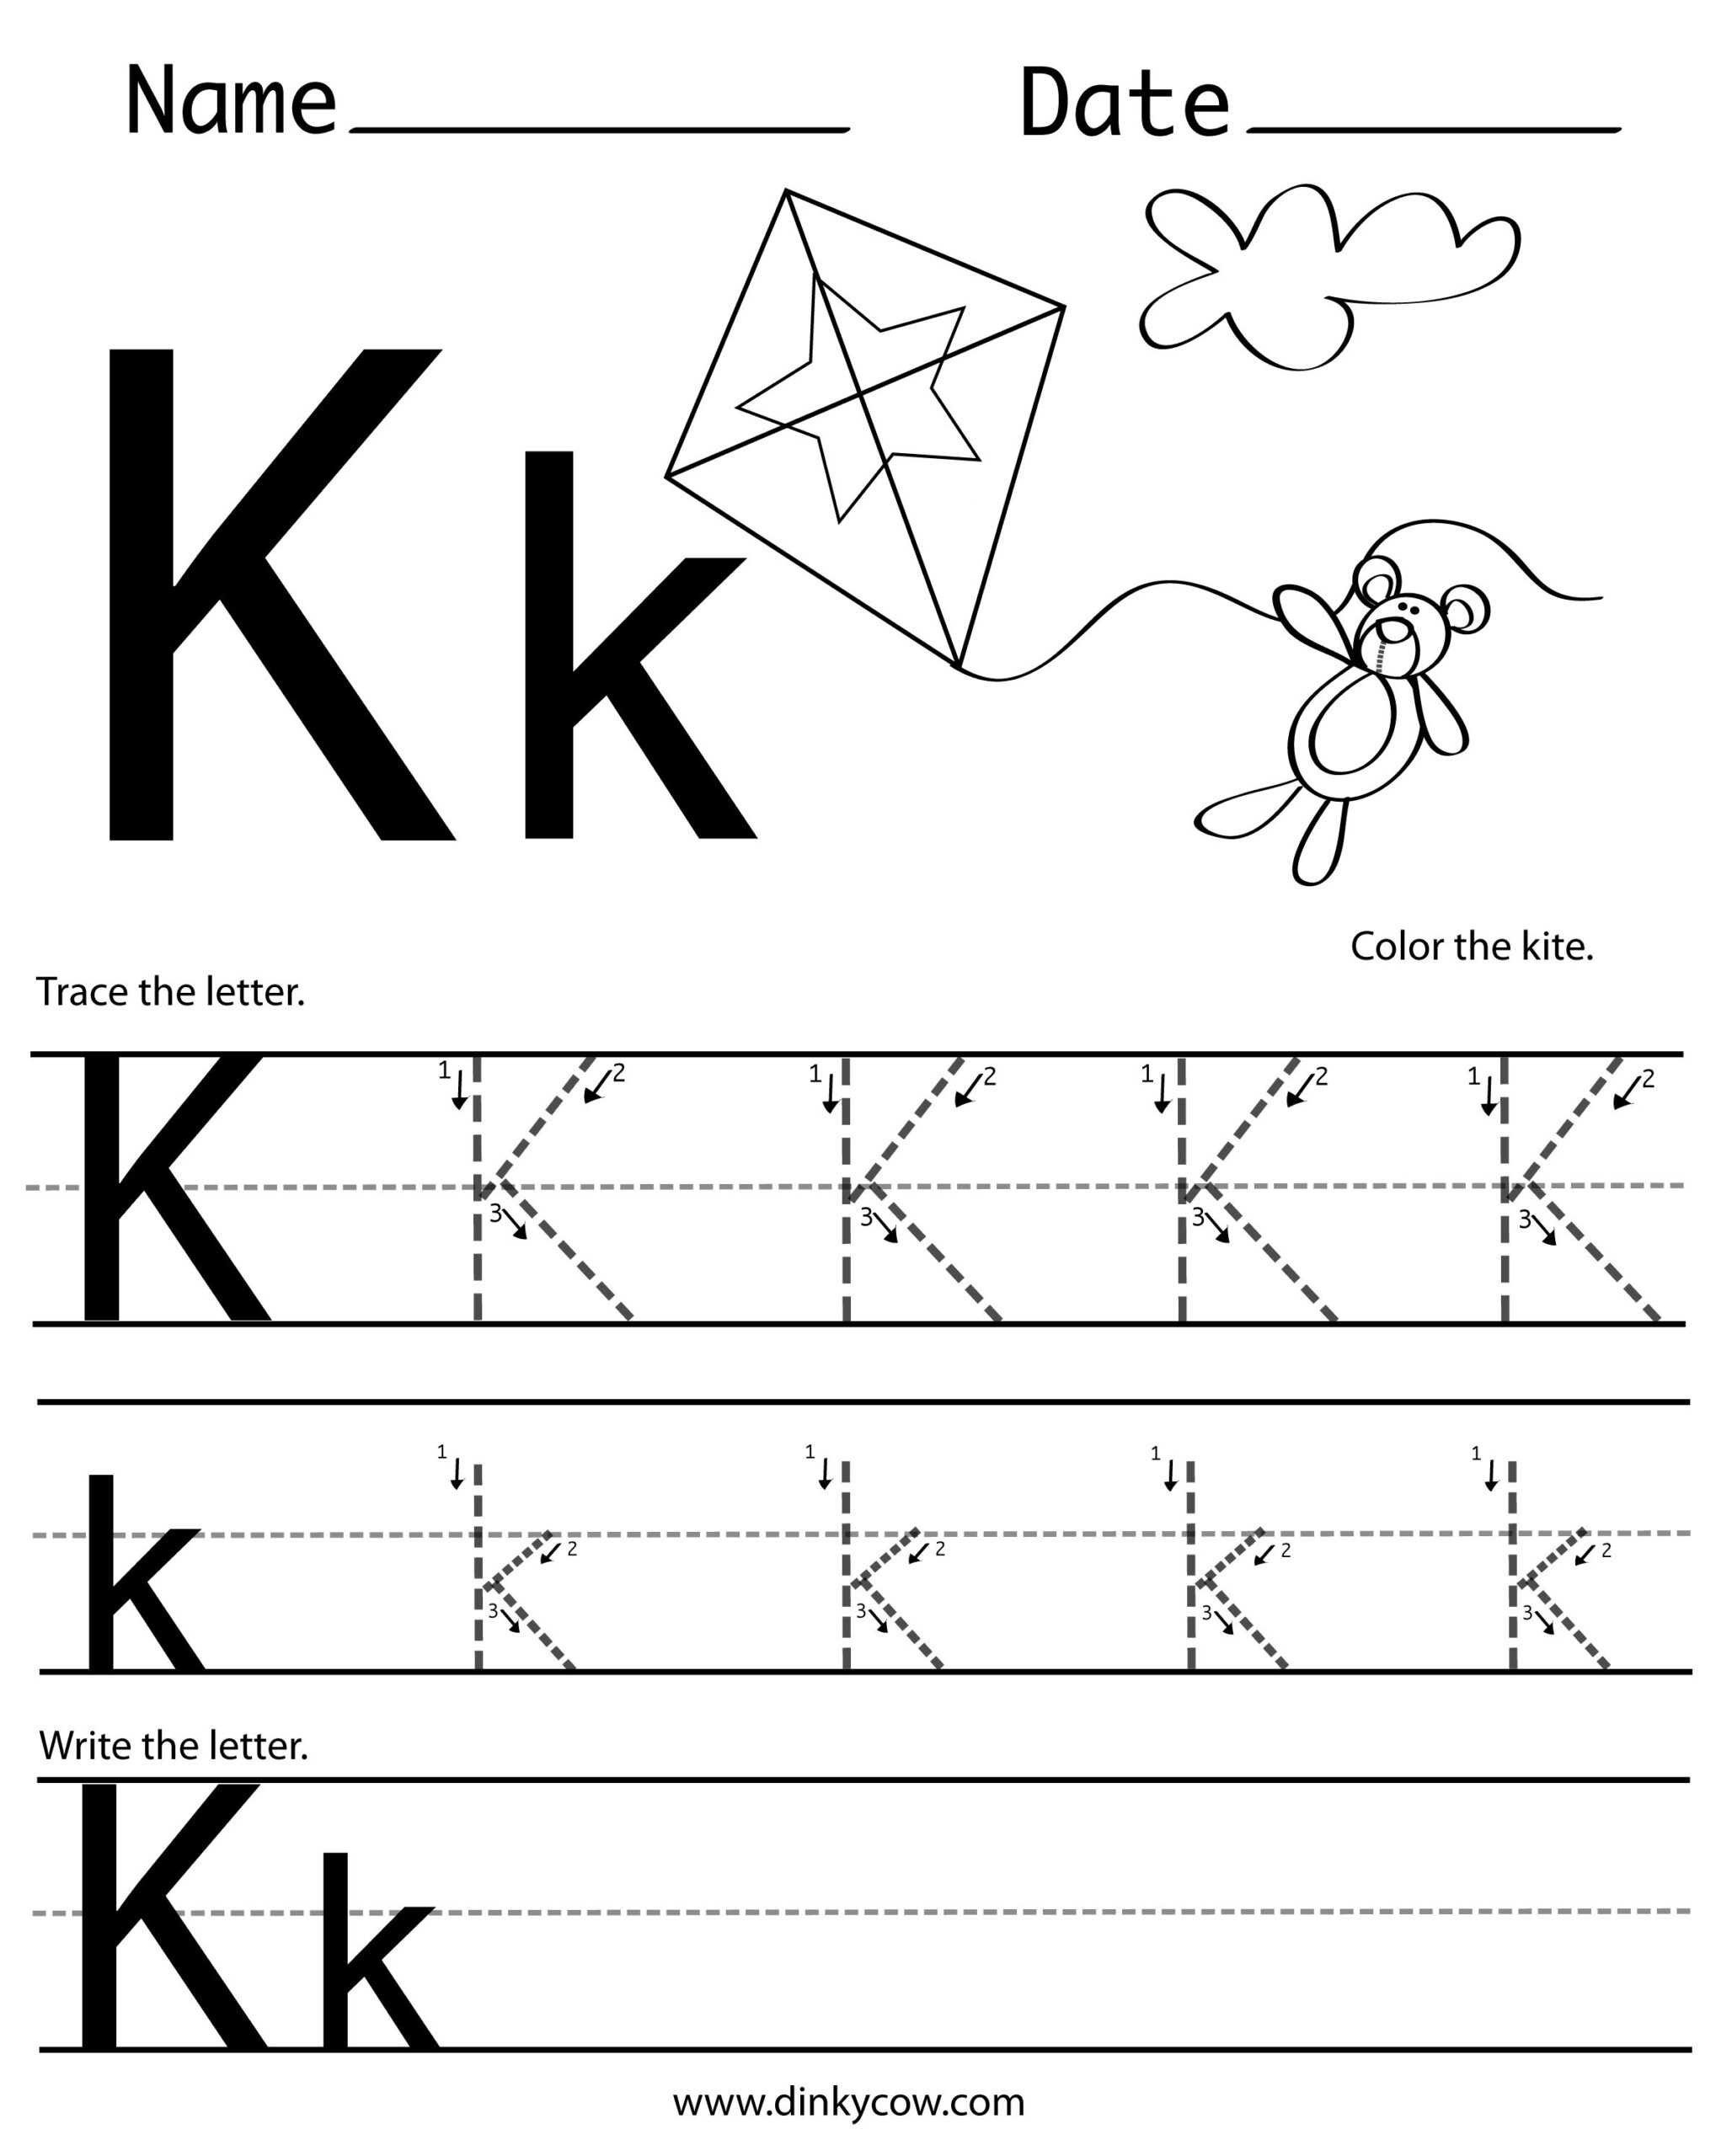 k-letter-tracing-alphabetworksheetsfreecom-letter-k-alphabet-flash-cards-for-preschoolers